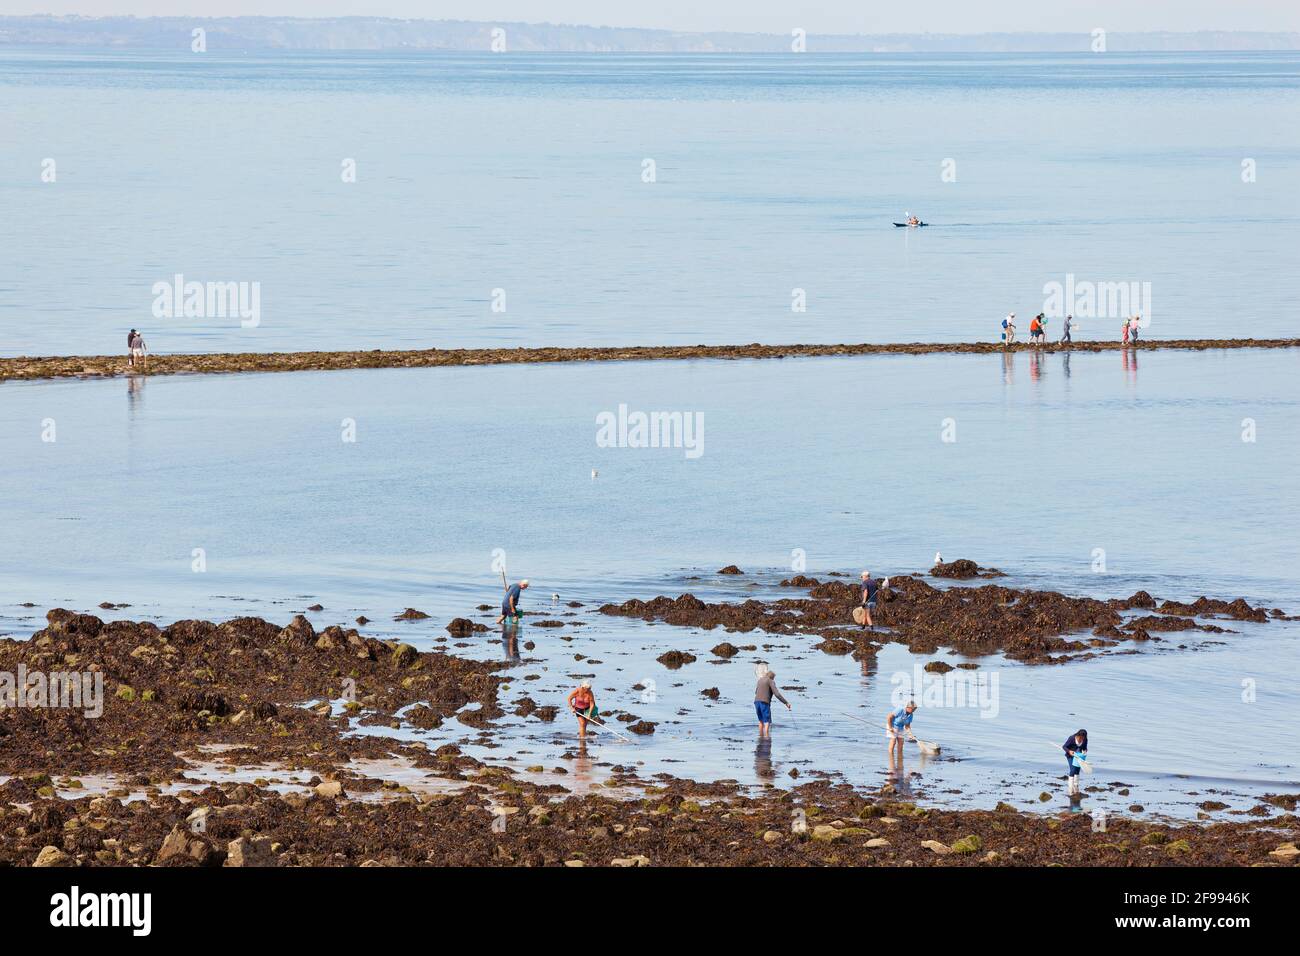 Les pêcheurs font un pèlerinage à l'île marémotrice Verdelet en face de la ville de Val André pour aller pêcher à pied - Peche a pied. Banque D'Images